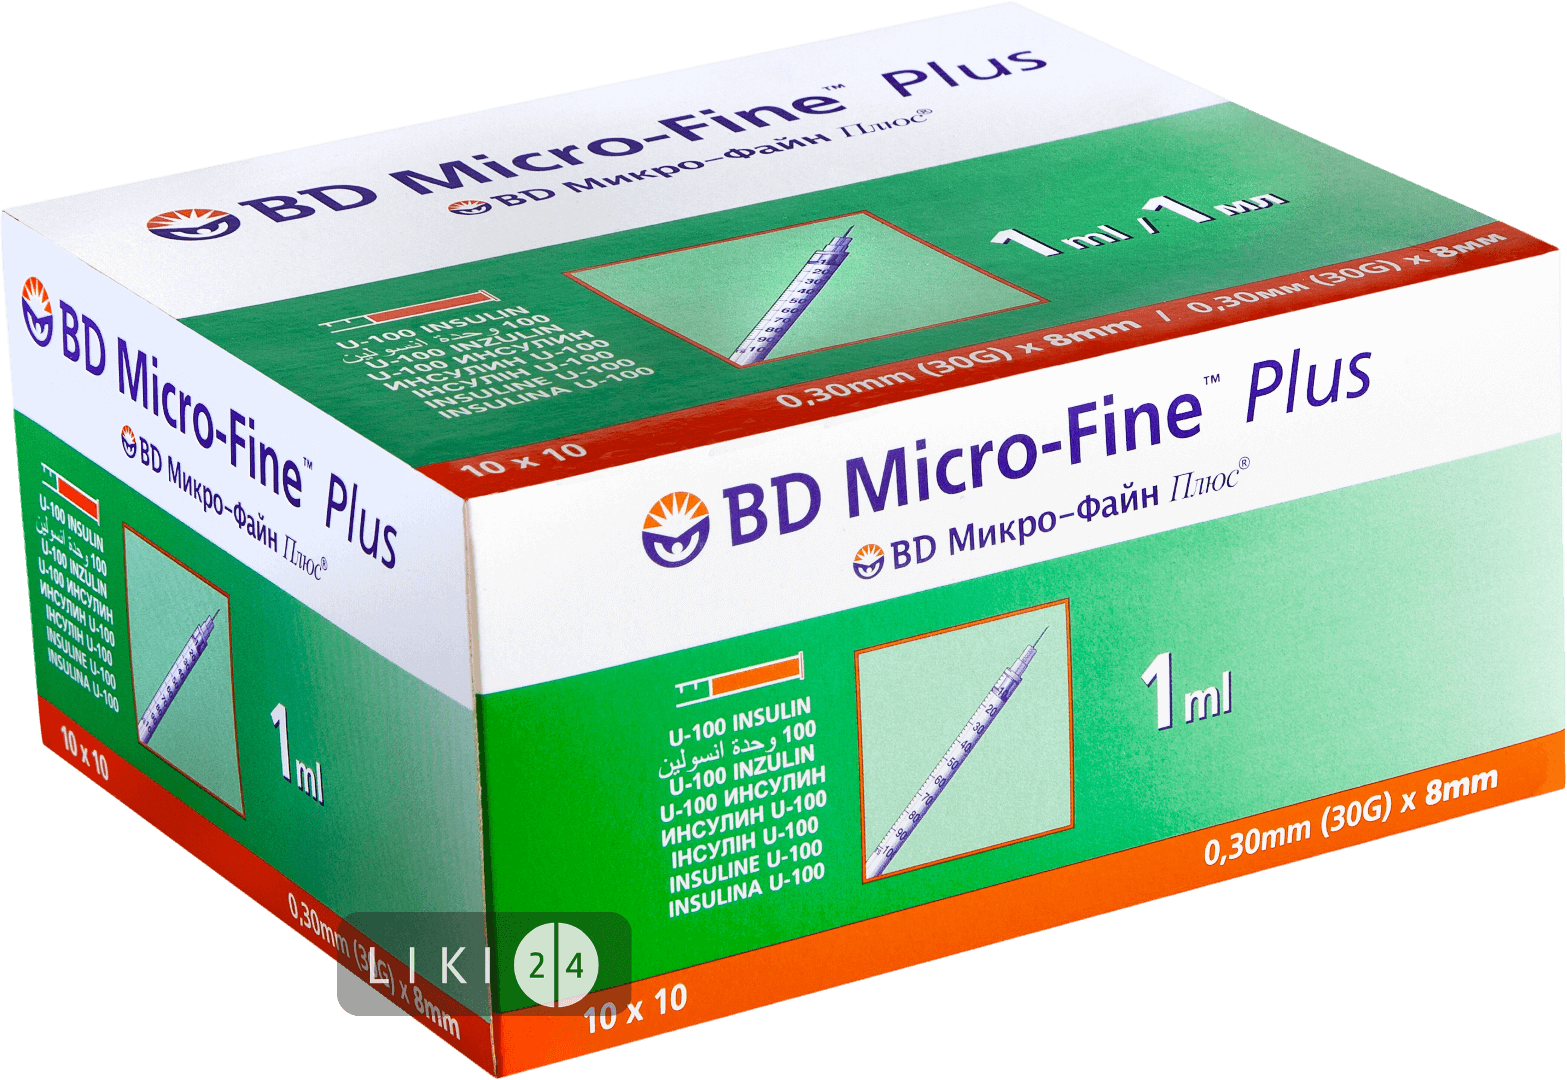 

Шприц ін'єкційний інсуліновий одноразового застосування bd micro-fine plus U-100 1 мл, з голкою 0,3 мм (30 G) х 8 мм №100, U-100 1 мл, з голкою 0,3 мм (30 G) х 8 мм